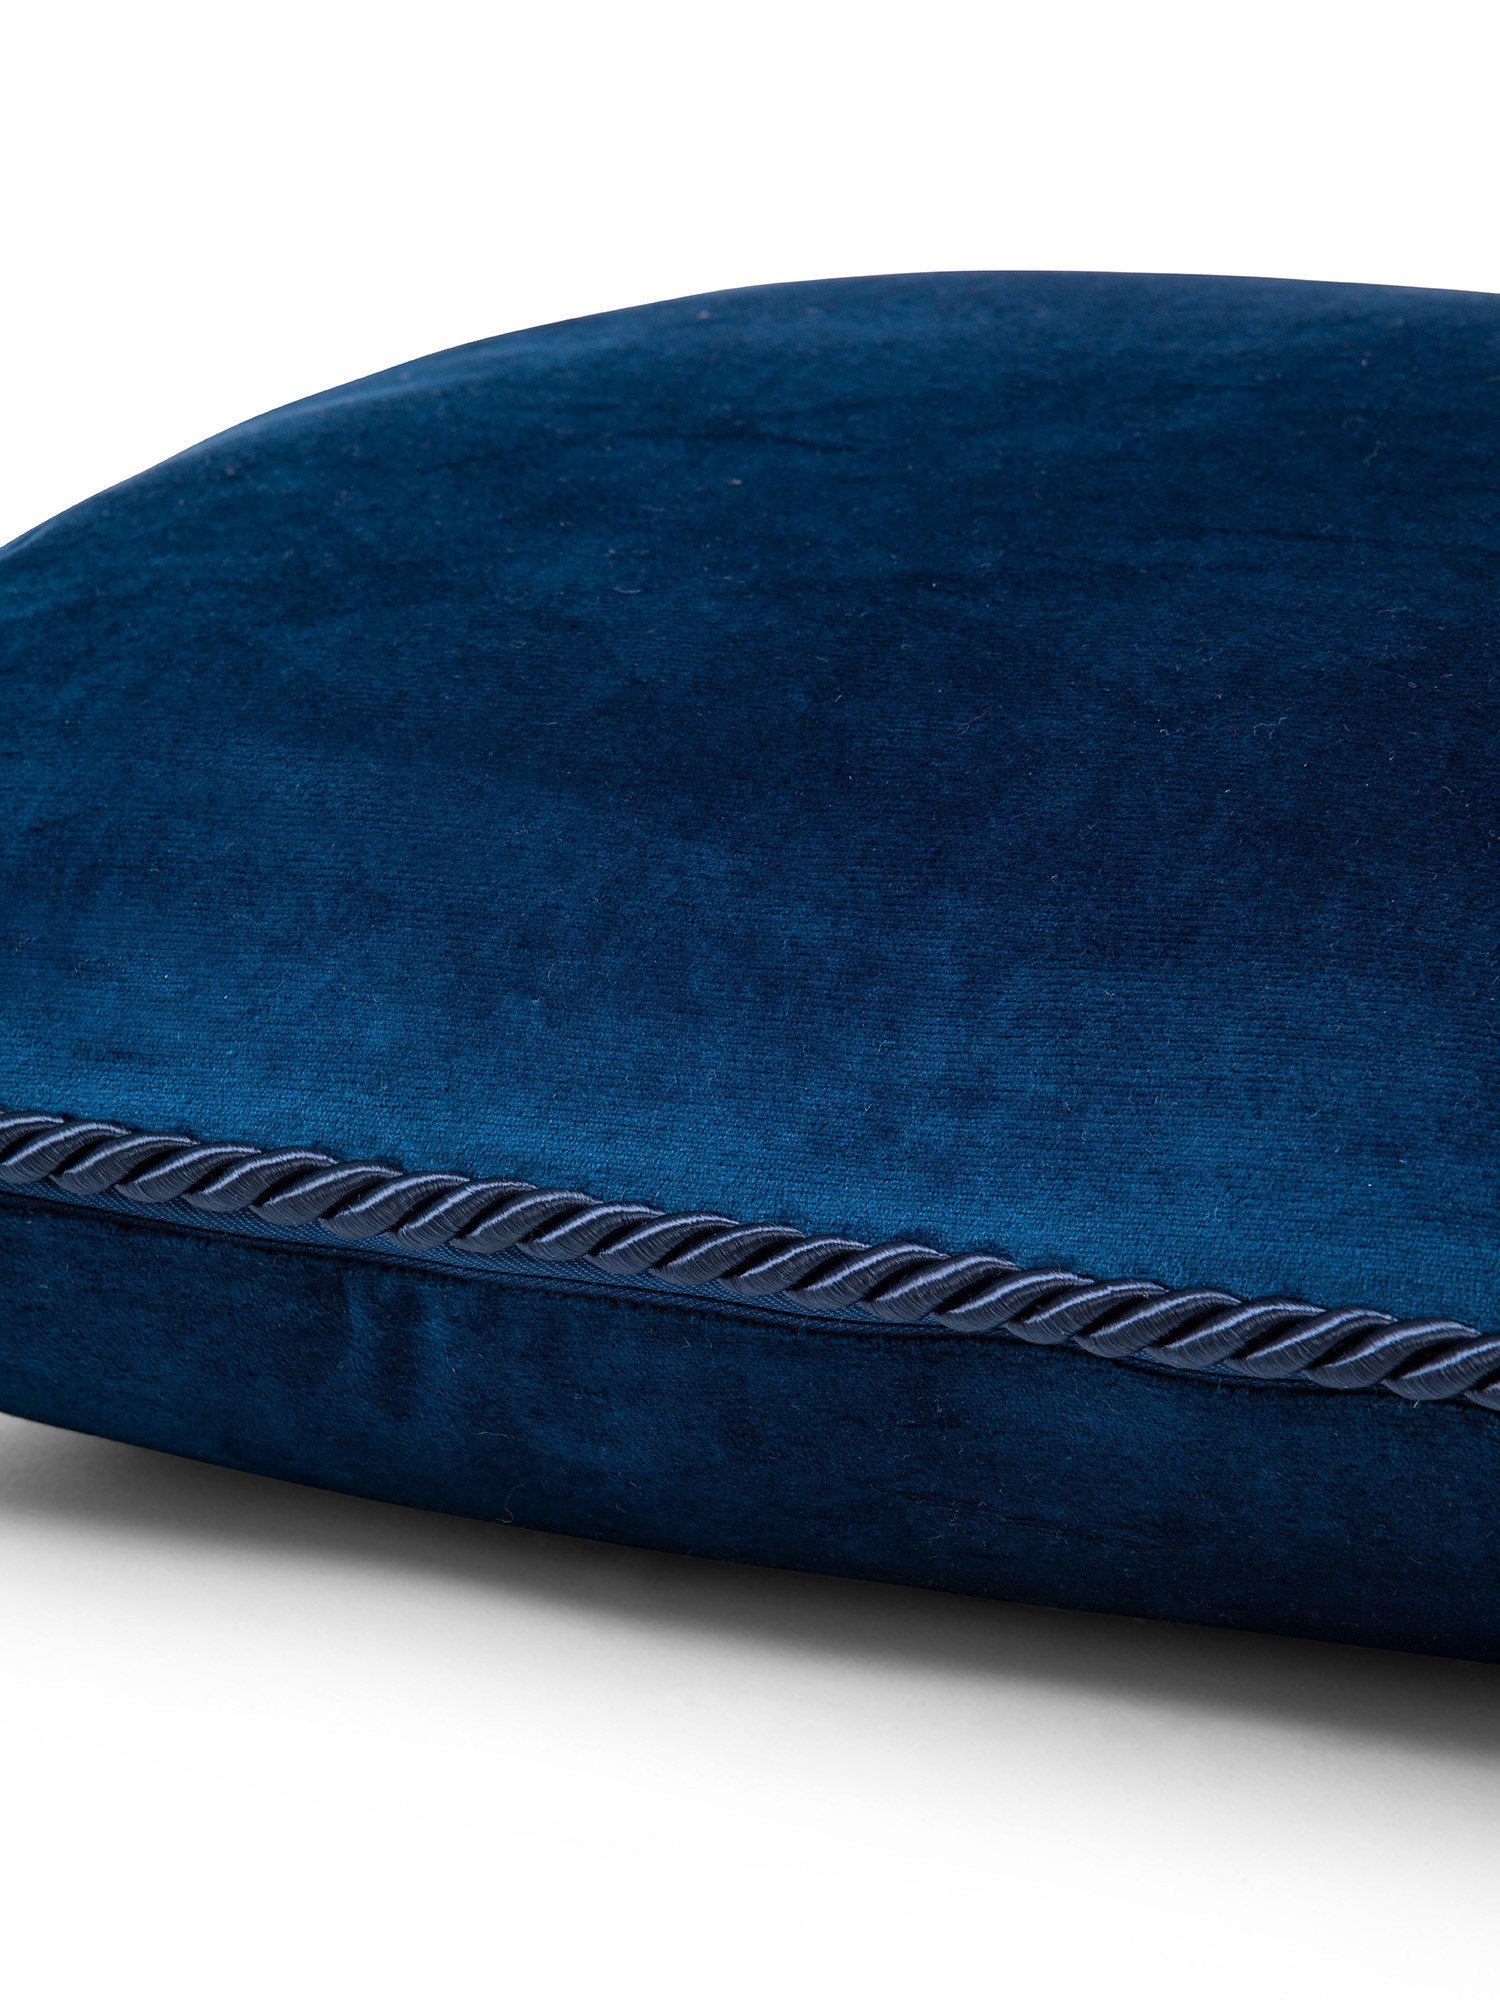 Solid color velvet cushion 45X45cm, Royal Blue, large image number 2